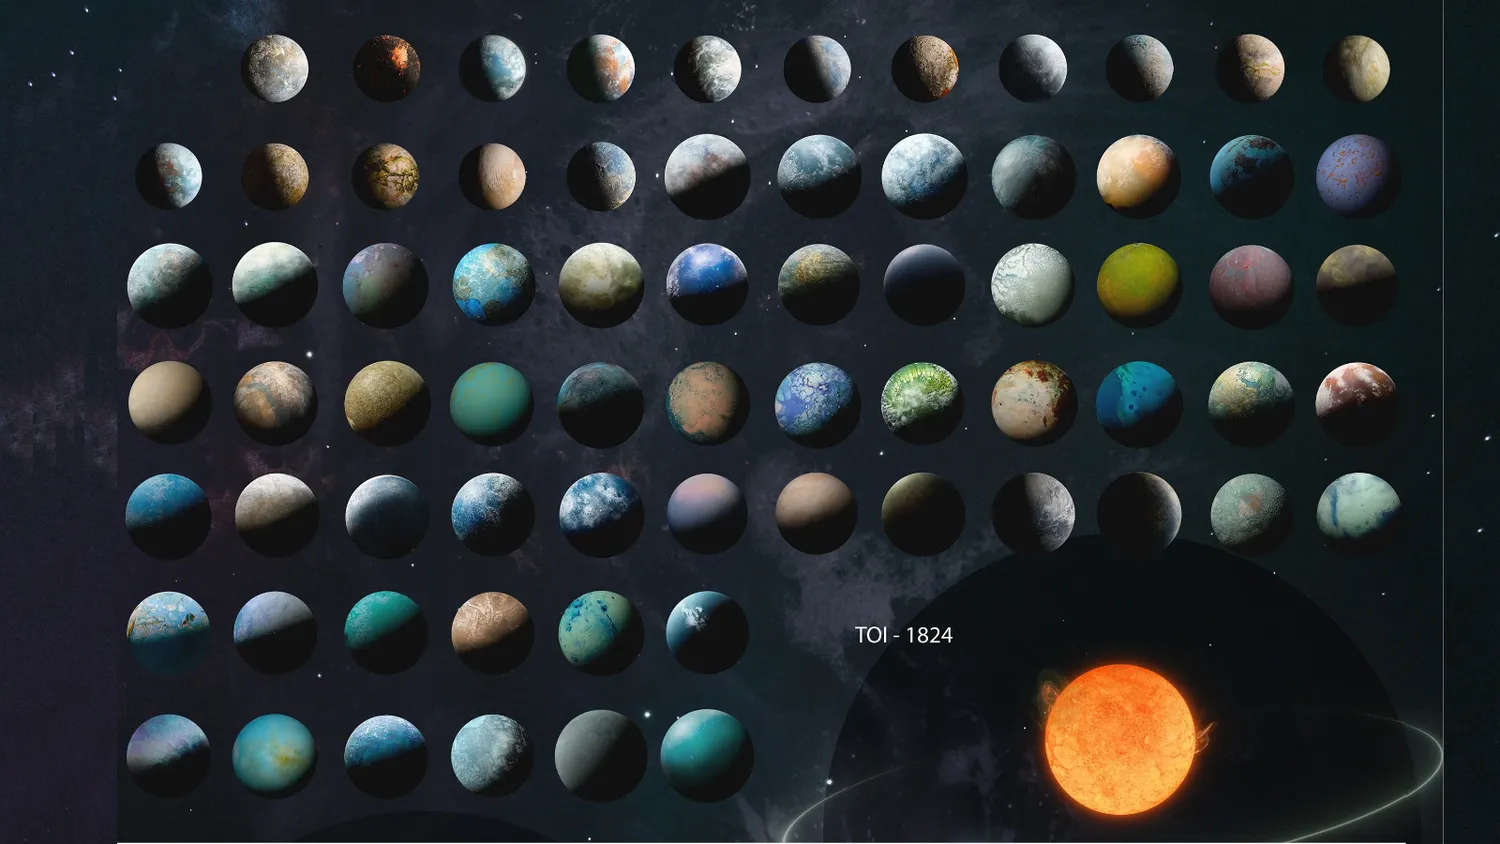 Mehr über den Artikel erfahren Umfangreicher NASA-Exoplanetenkatalog enthüllt 126 extreme und exotische Welten